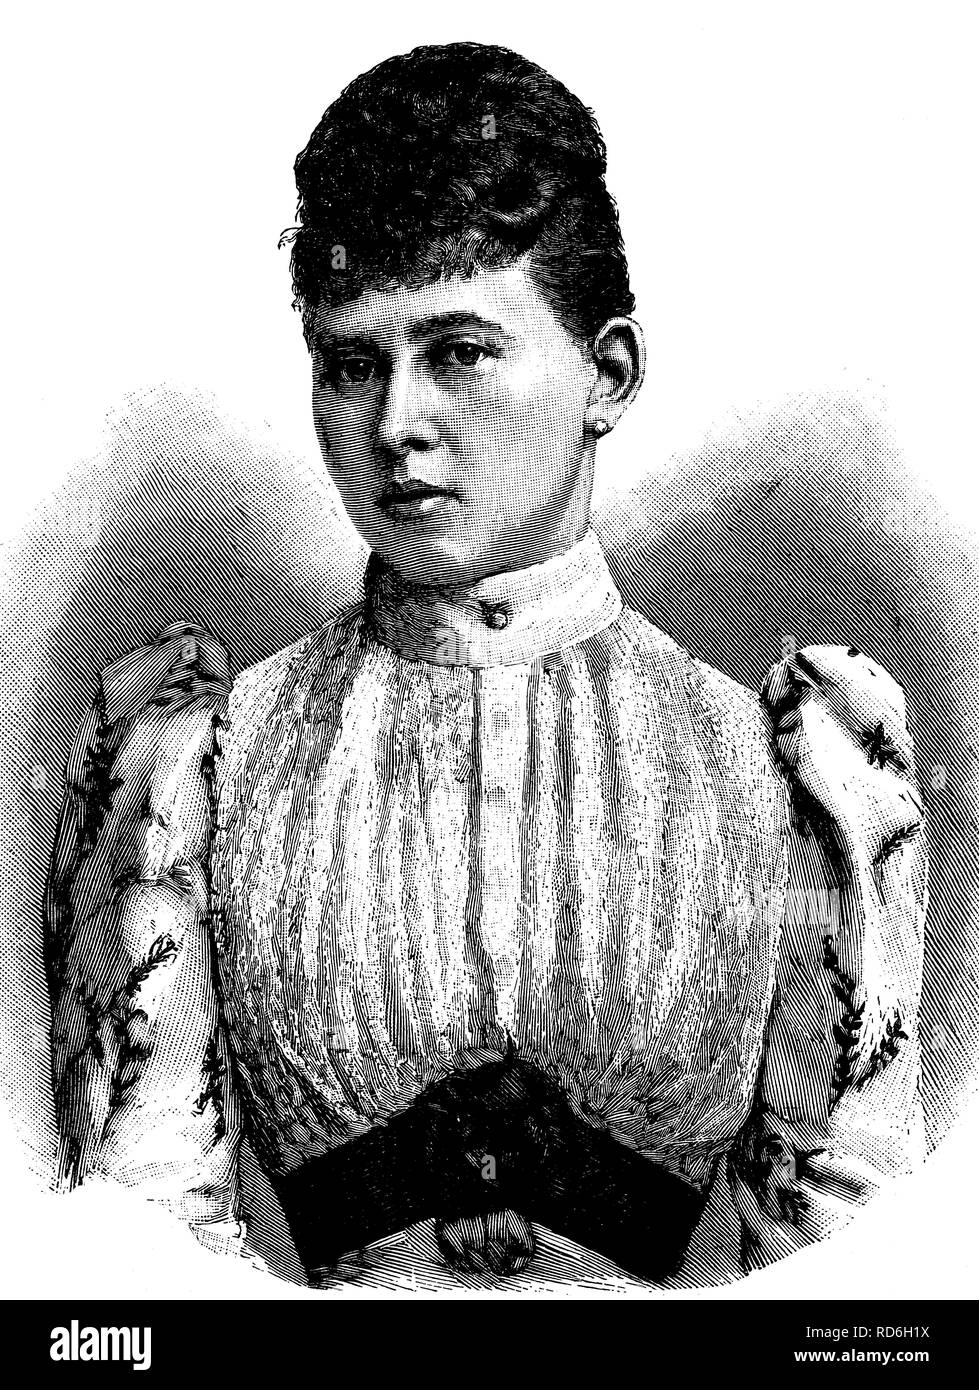 Prinzessin Margaret von Preußen oder Margarete Beatrice Feodora, 1872-1954, Landgräfin von Hessen-Kassel, historische Darstellung Stockfoto